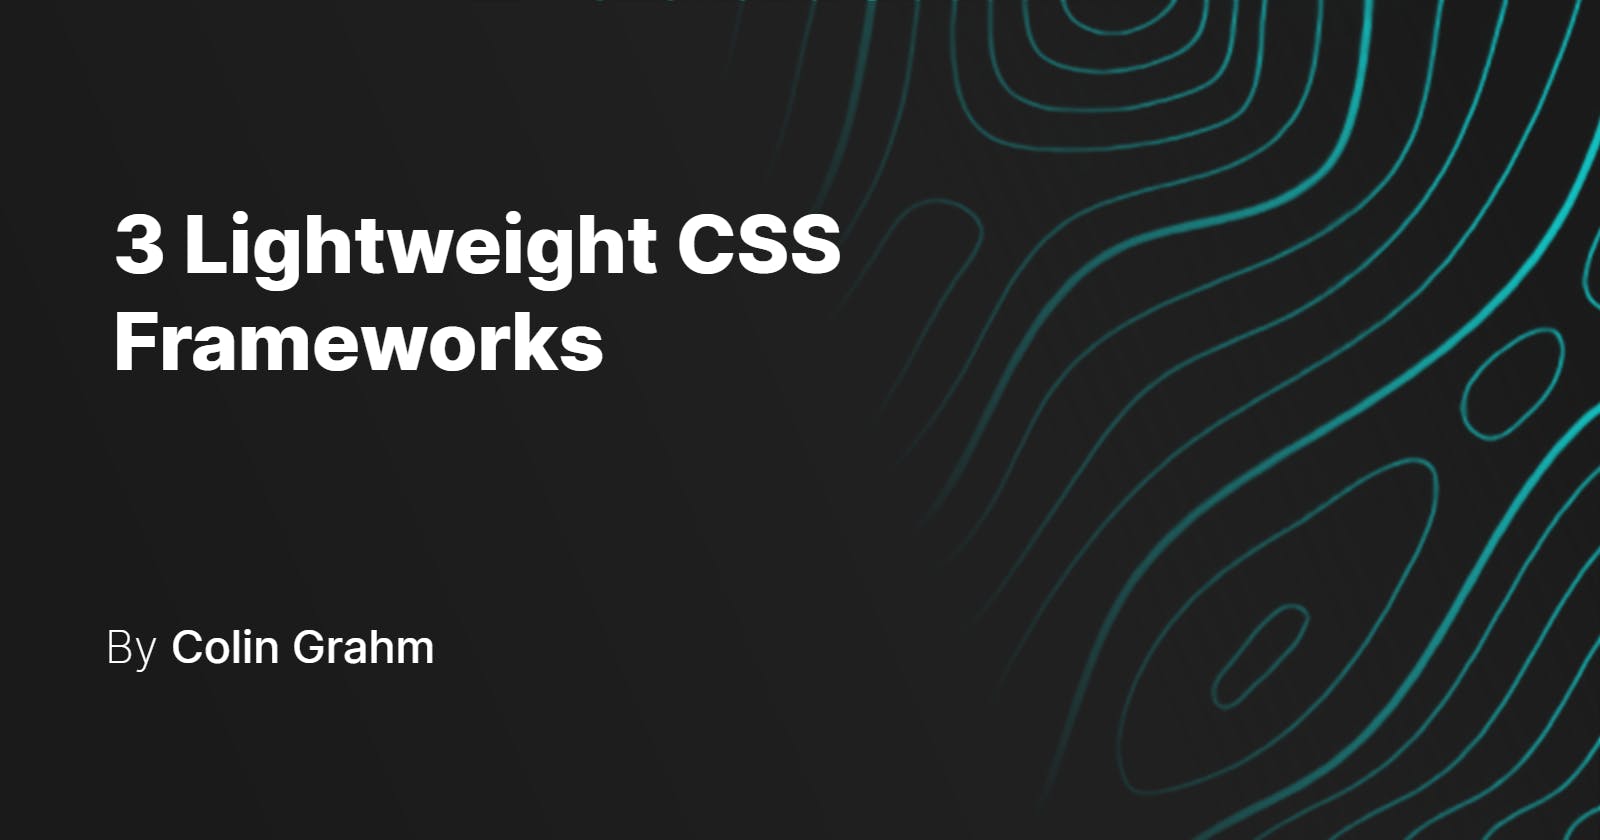 3 Lightweight CSS Frameworks